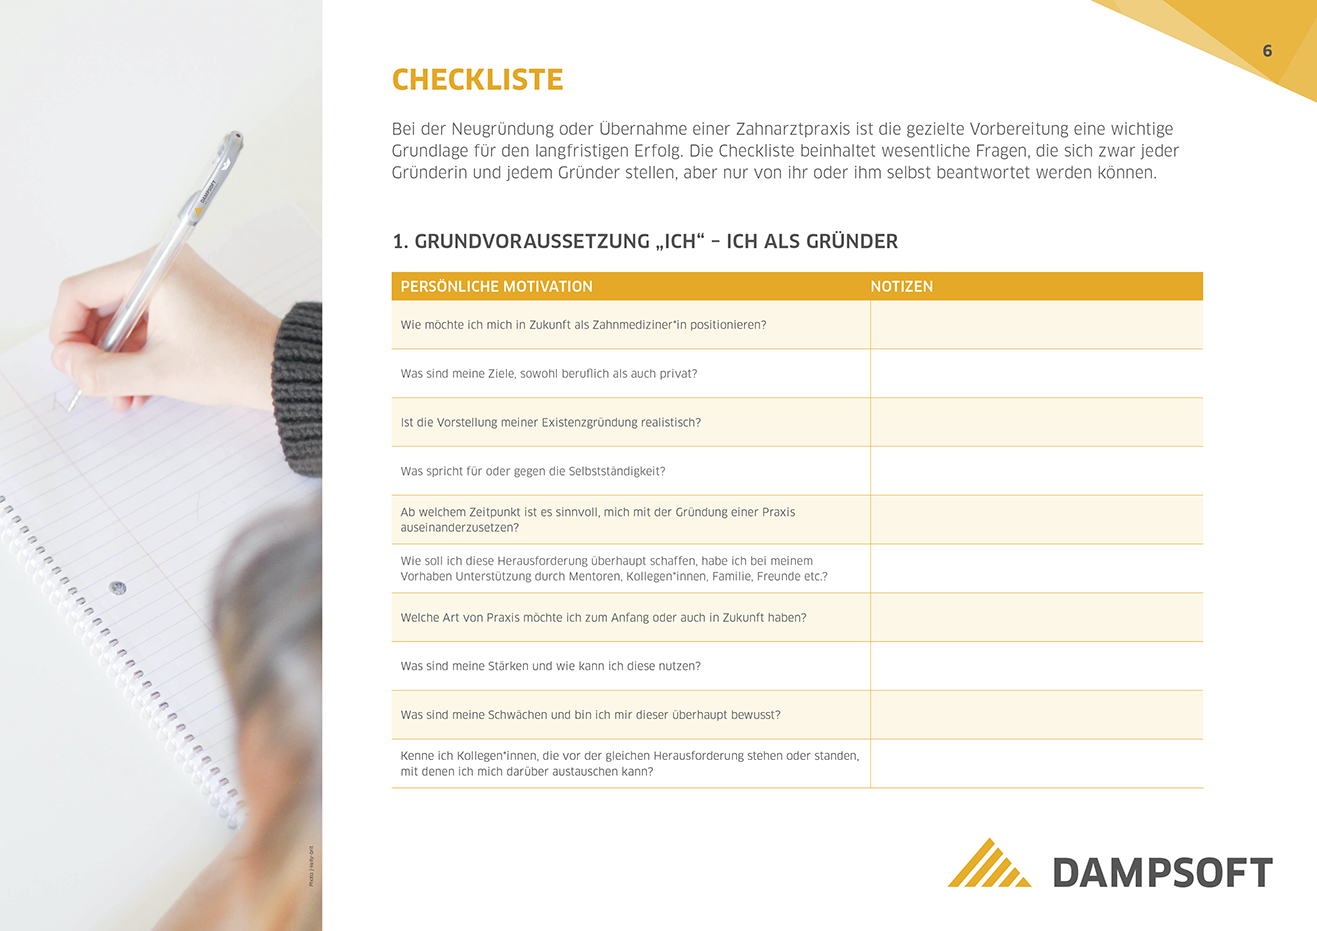 Dampsoft-Checkliste für Praxisgruender